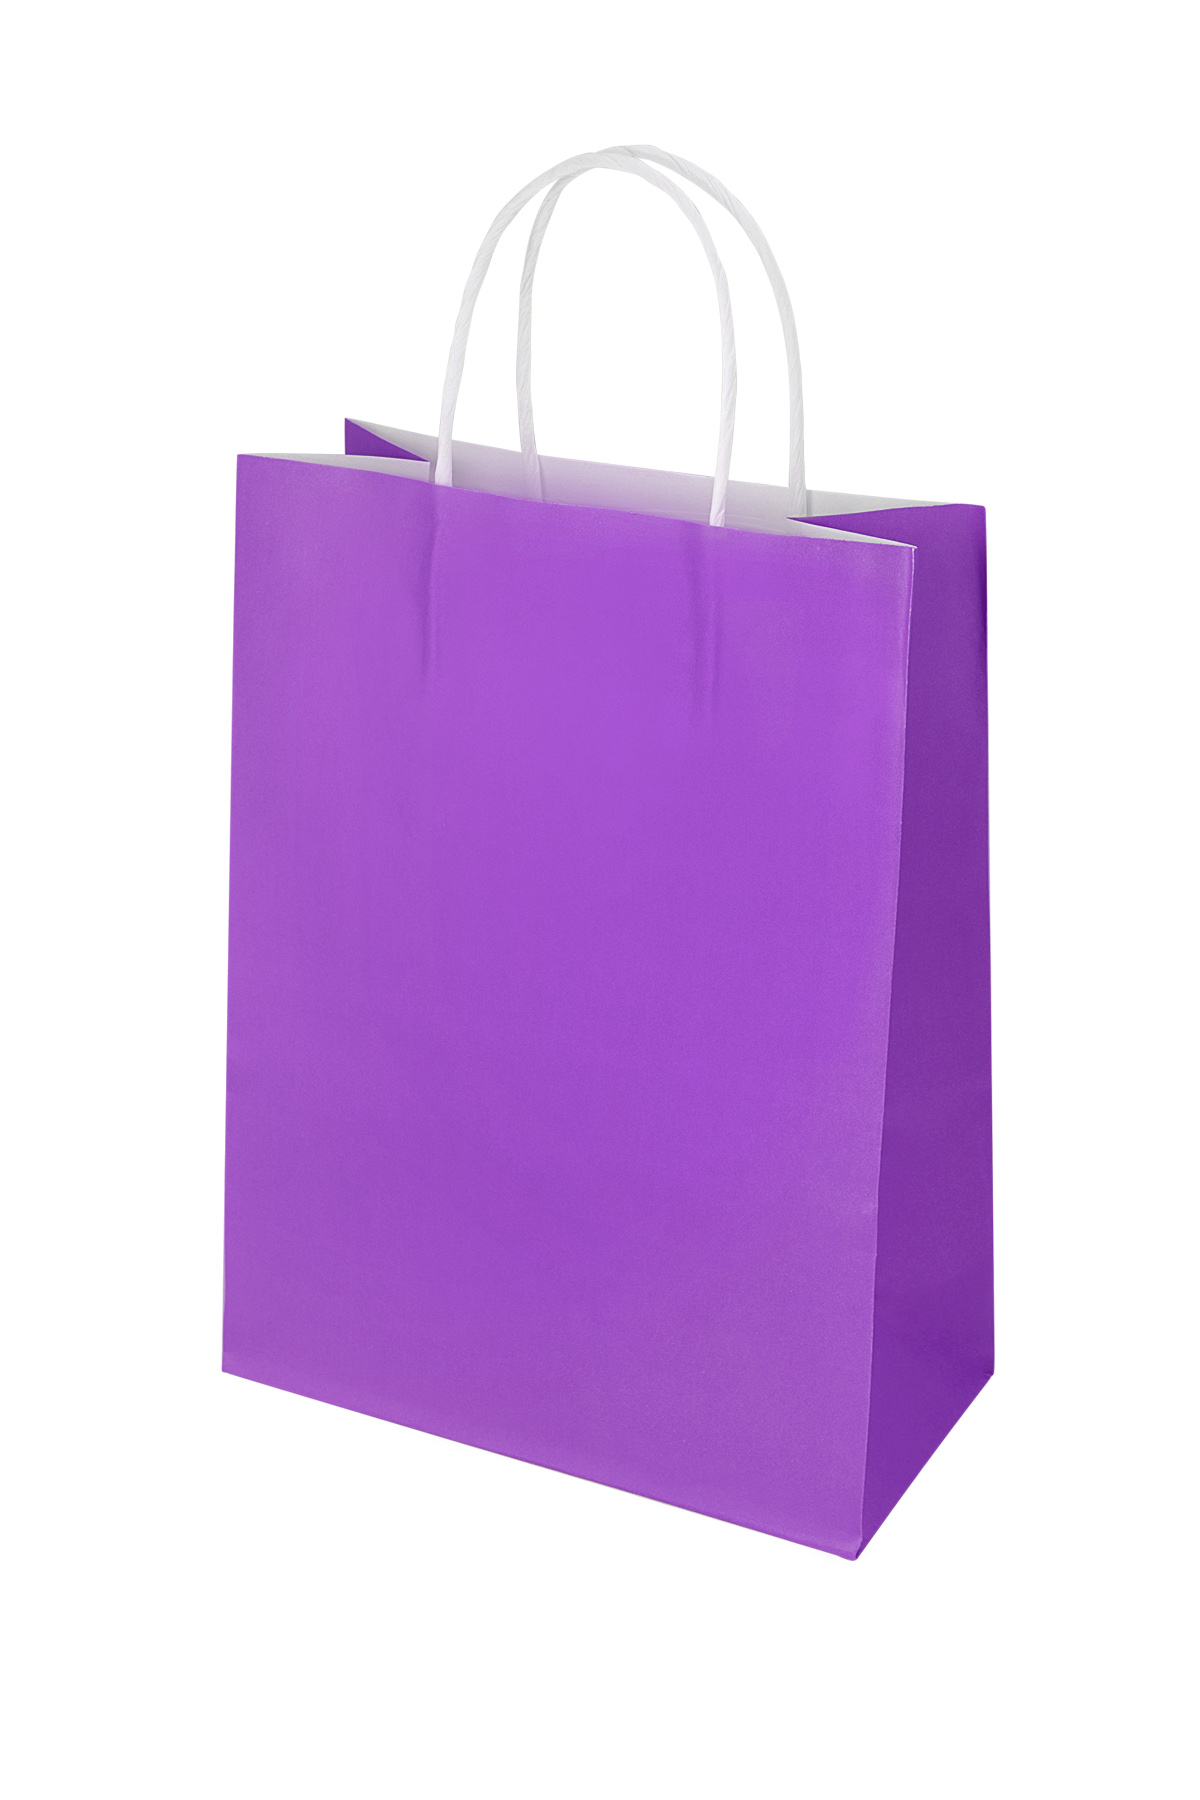 Bags plain 50 pieces large - purple Paper